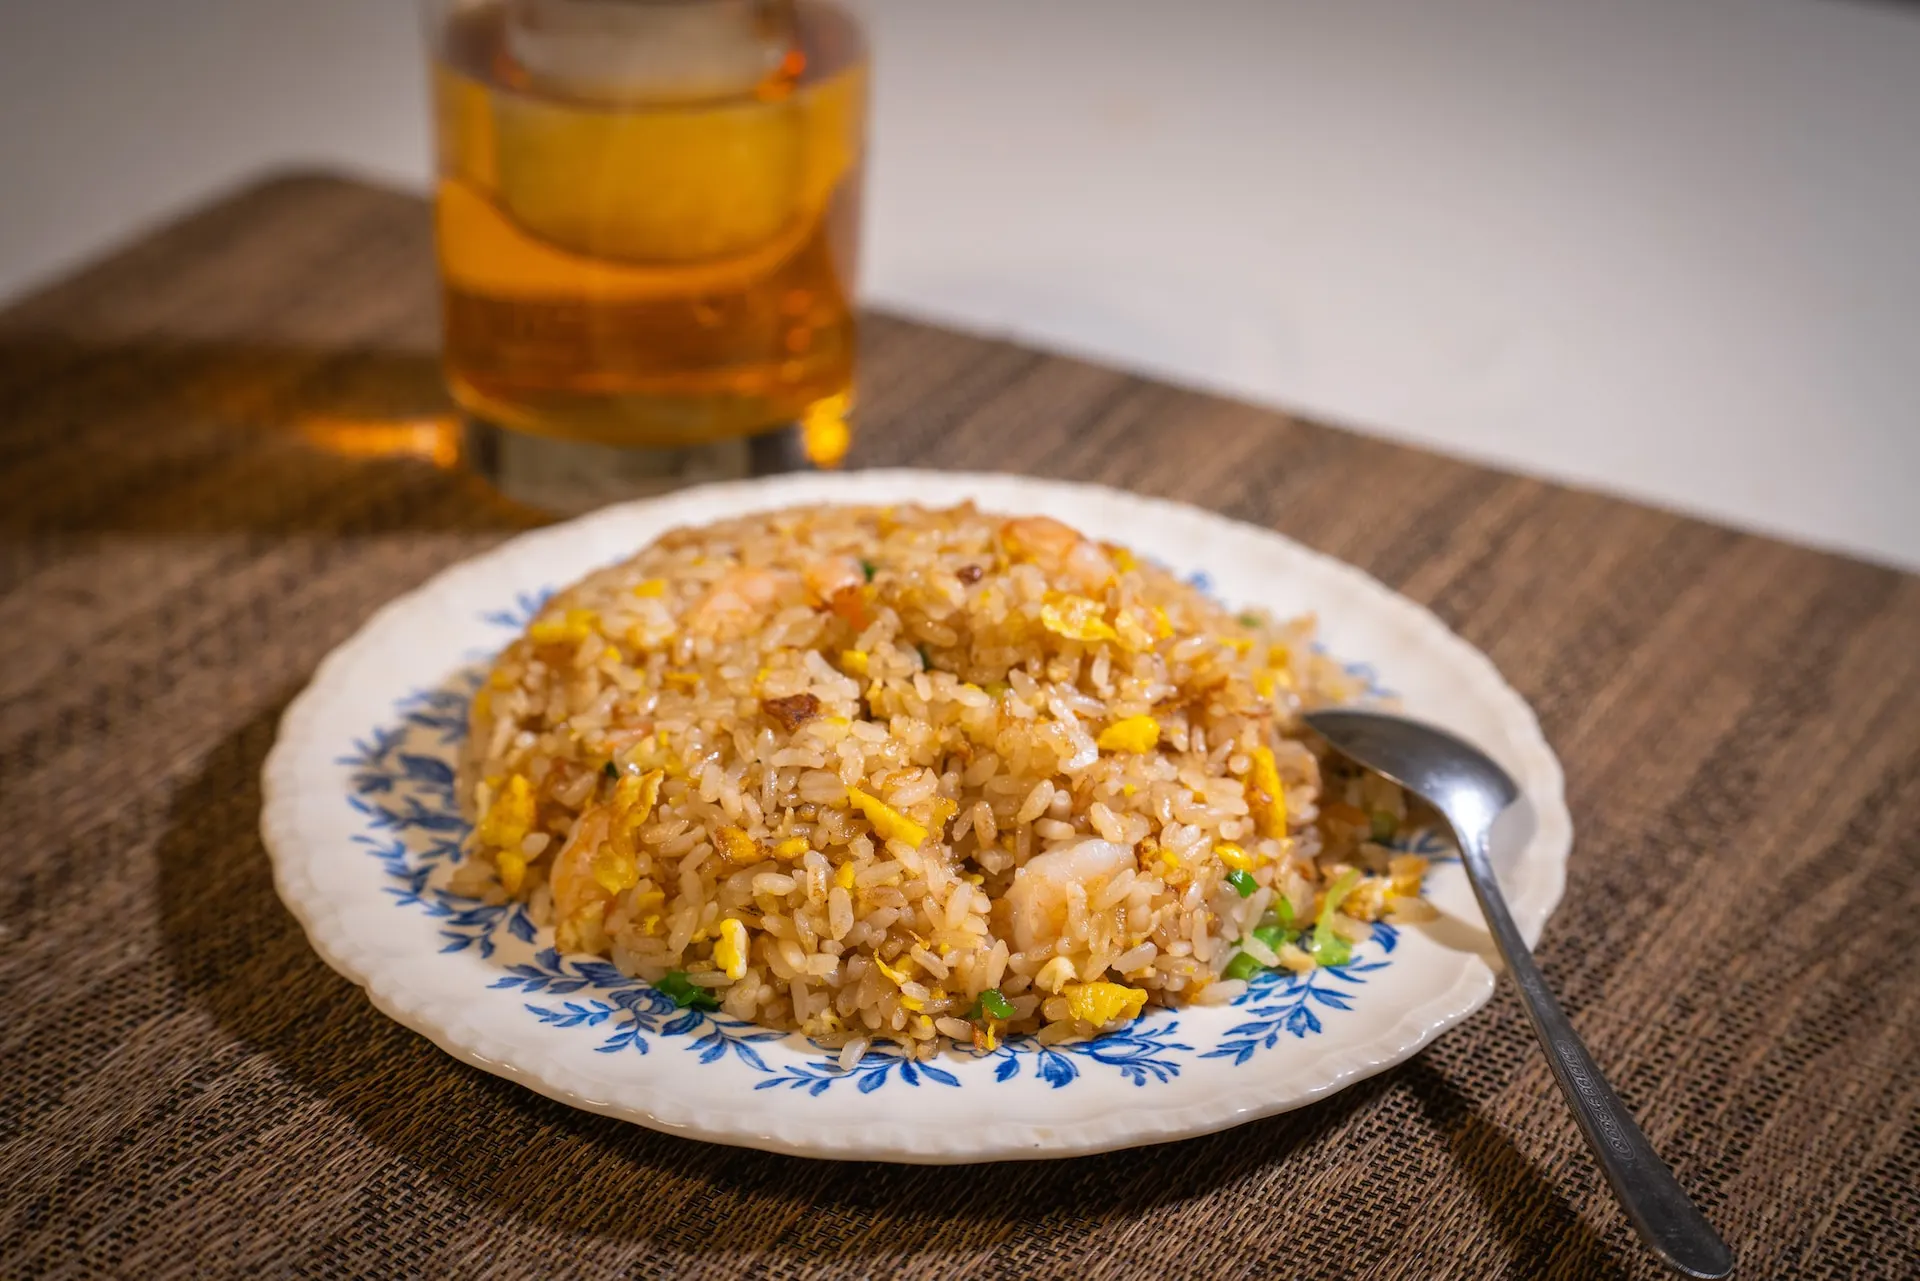 resep nasi goreng sederhana